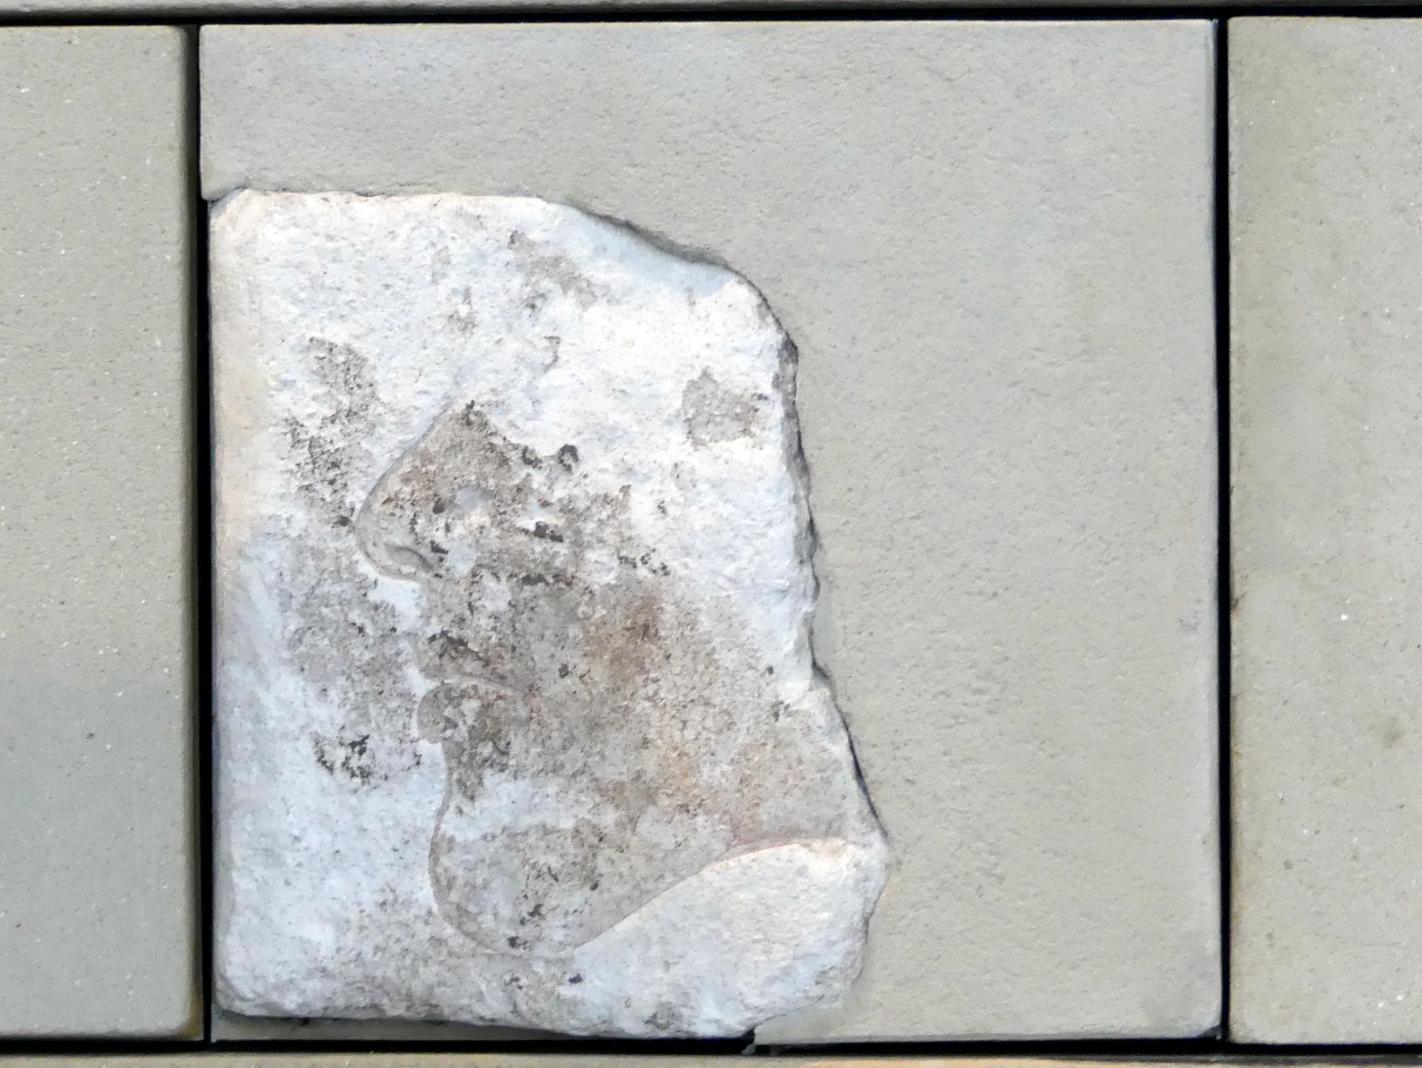 Fragmente von Tempelreliefs mit Szenen des höfischen Lebens, 18. Dynastie, Undatiert, 1350 - 1340 v. Chr., Bild 3/17